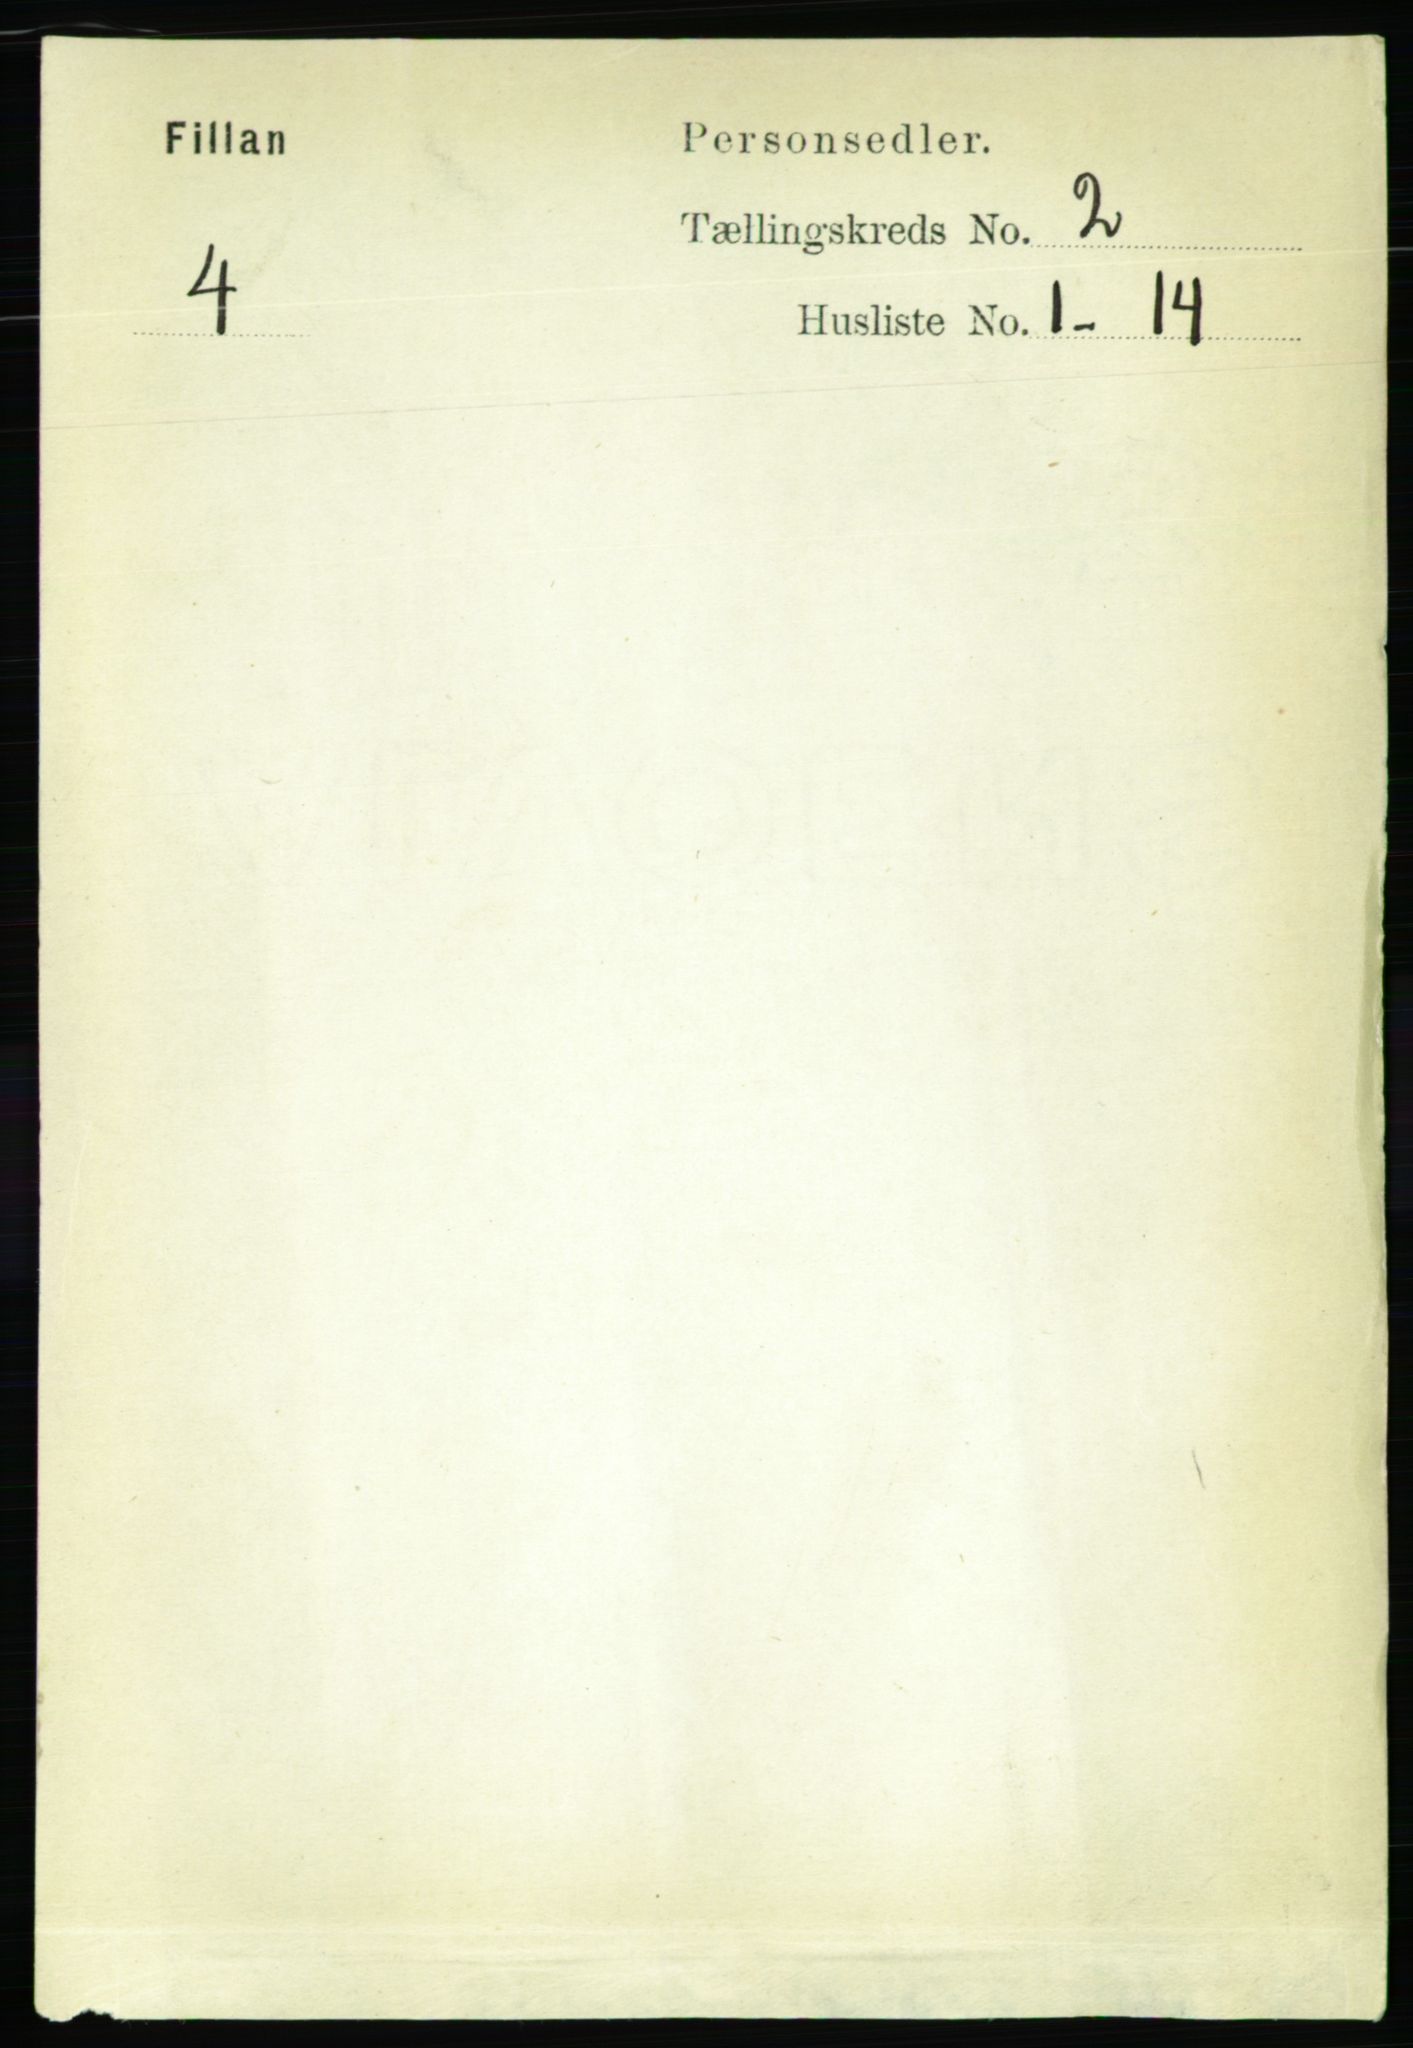 RA, Folketelling 1891 for 1616 Fillan herred, 1891, s. 224